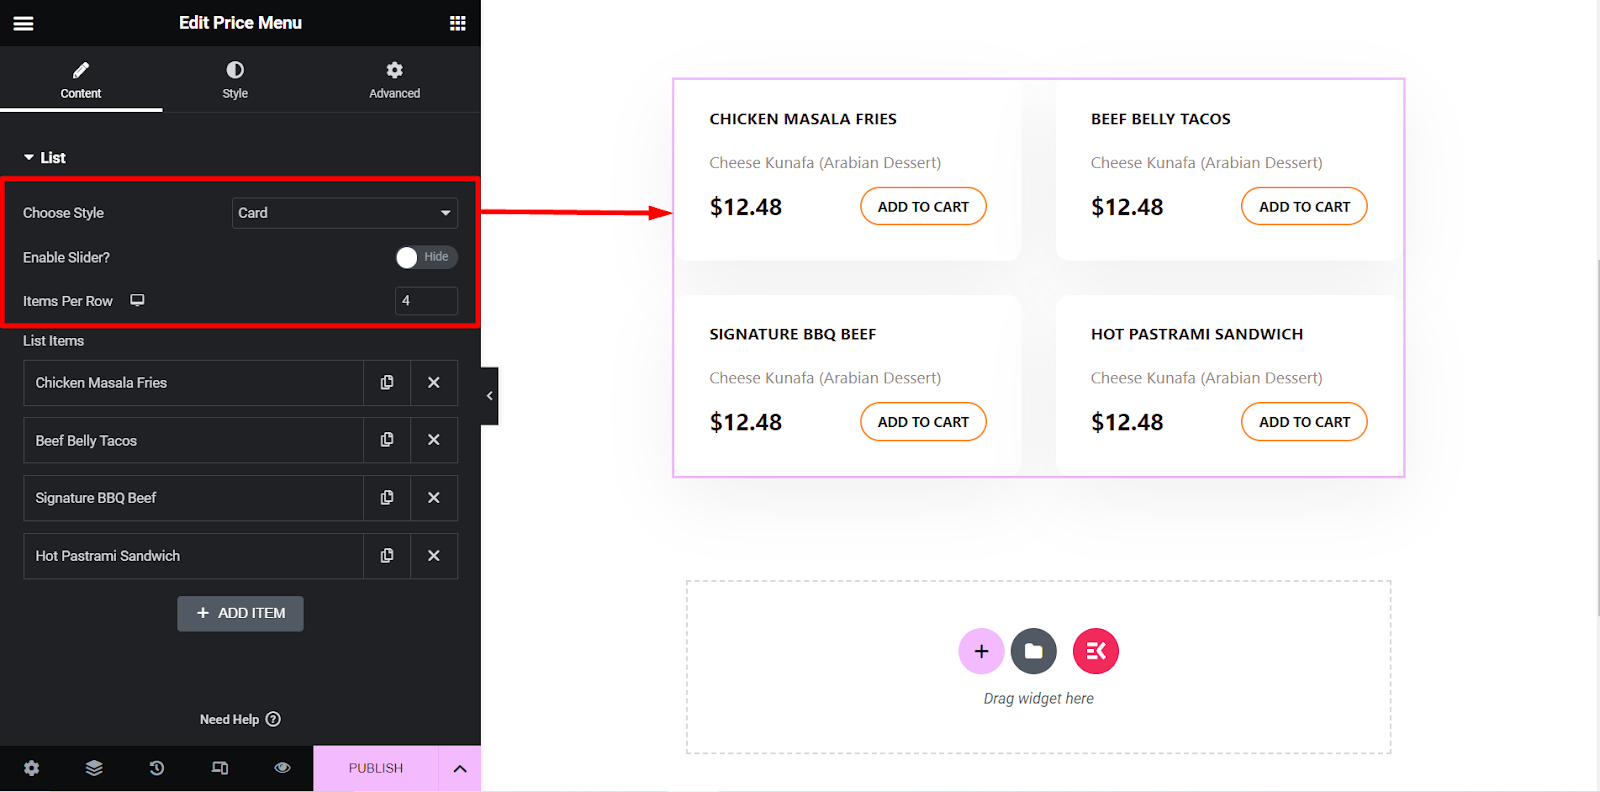 ElementsKit 가격 메뉴 위젯은 수많은 사용자 정의 옵션으로 구성되어 있습니다.